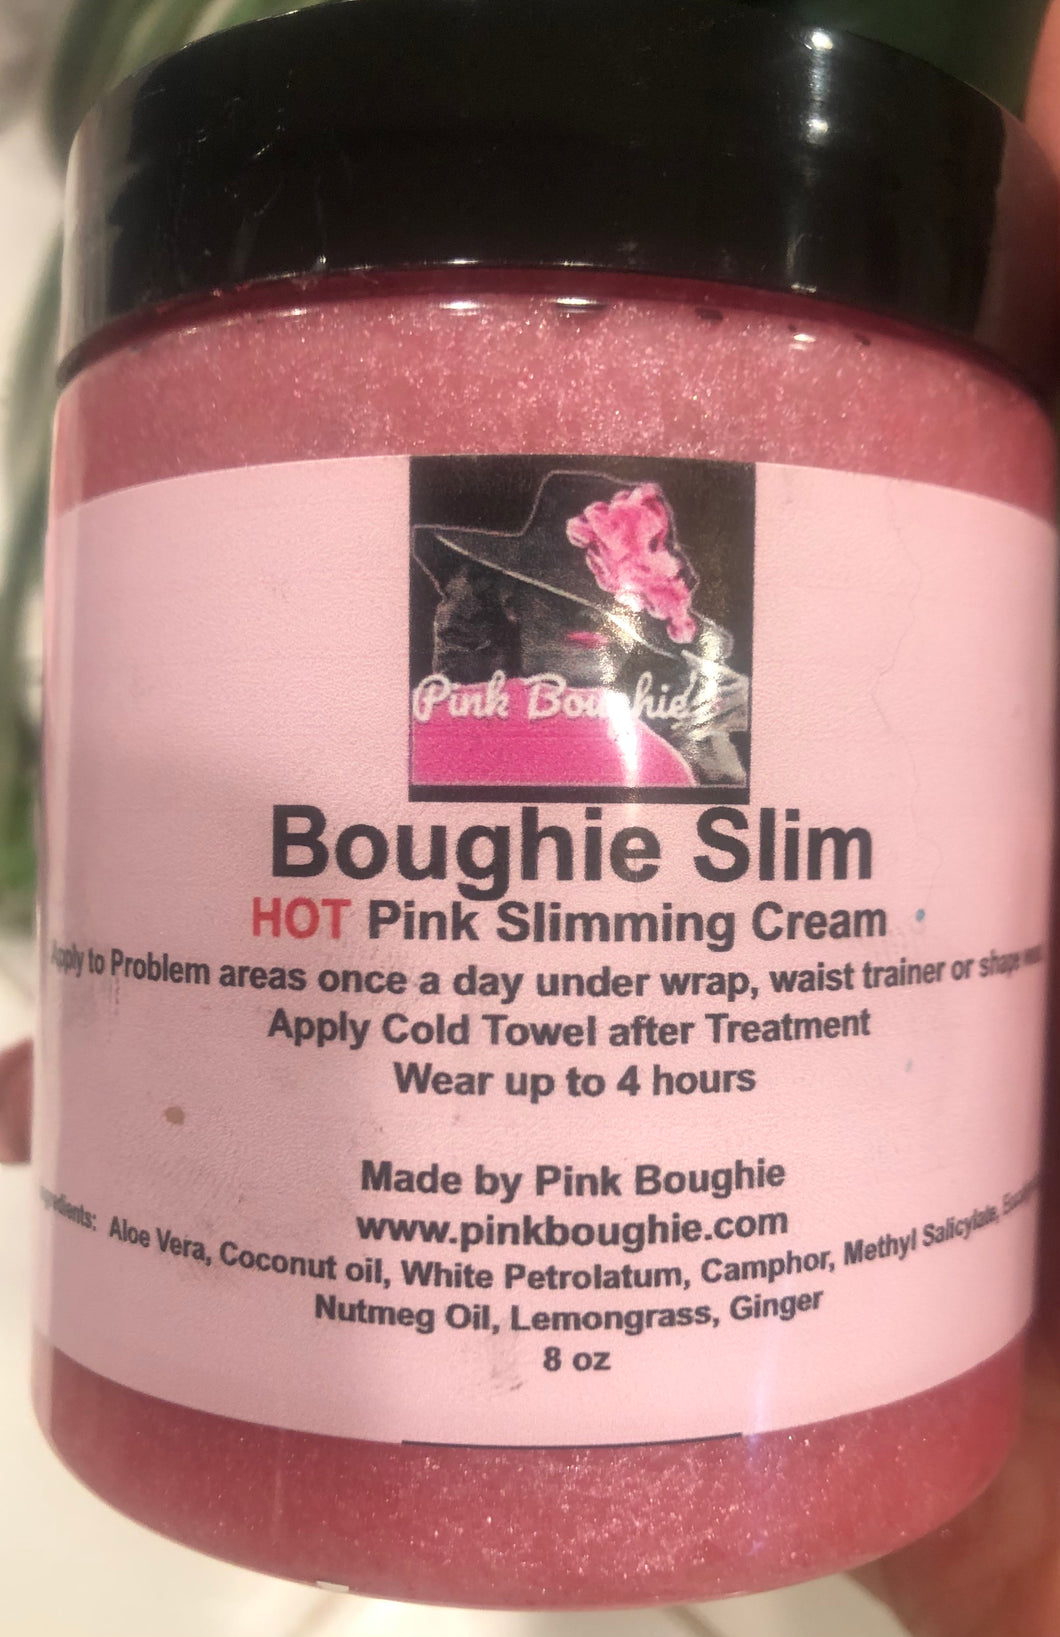 Boughie Slim - HOT Pink Slimming Gel with wrap